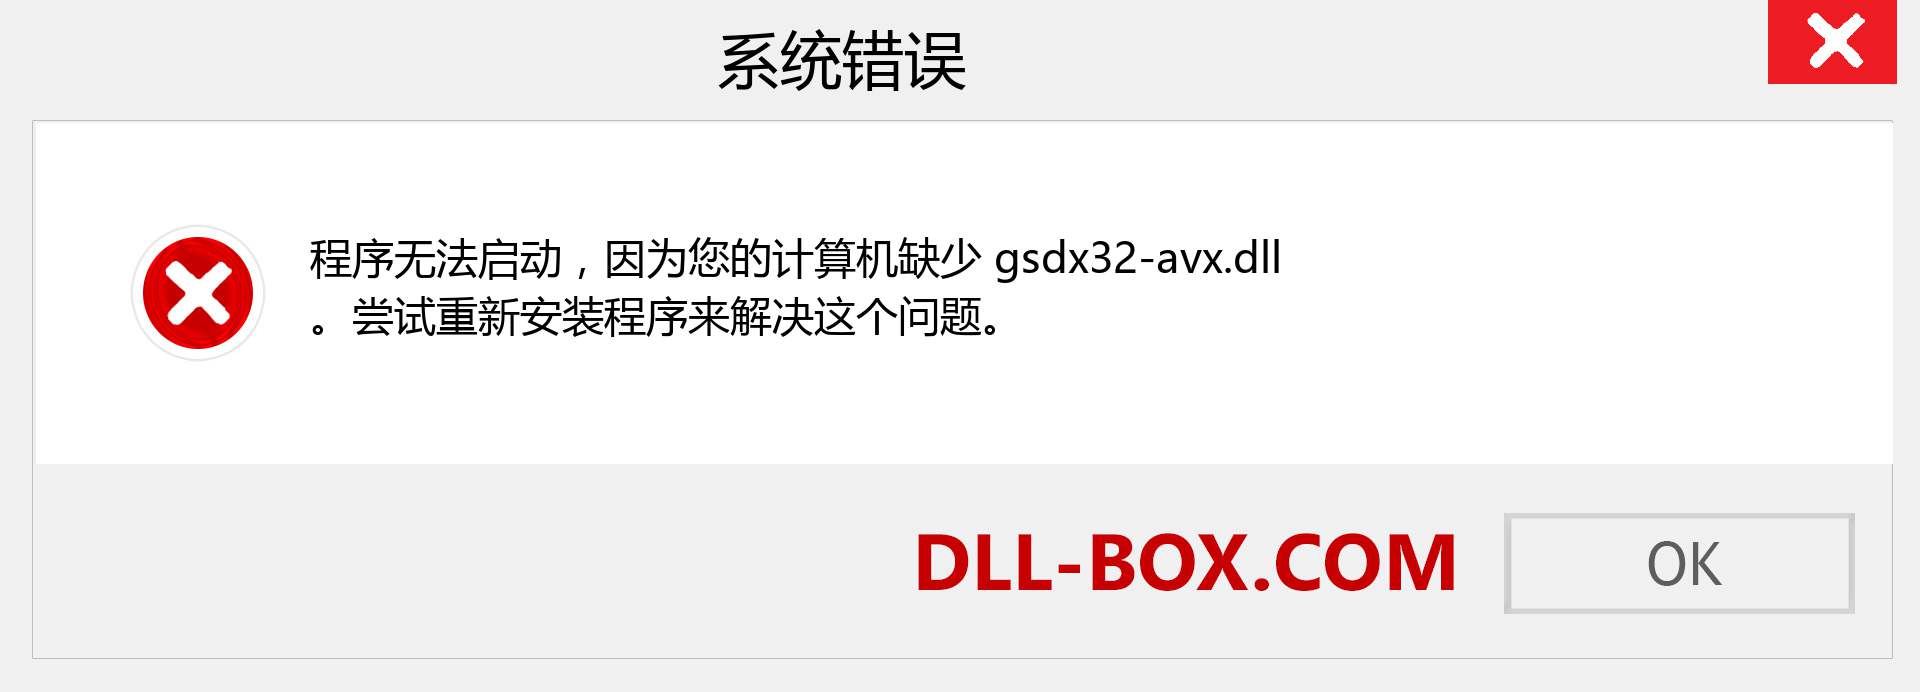 gsdx32-avx.dll 文件丢失？。 适用于 Windows 7、8、10 的下载 - 修复 Windows、照片、图像上的 gsdx32-avx dll 丢失错误